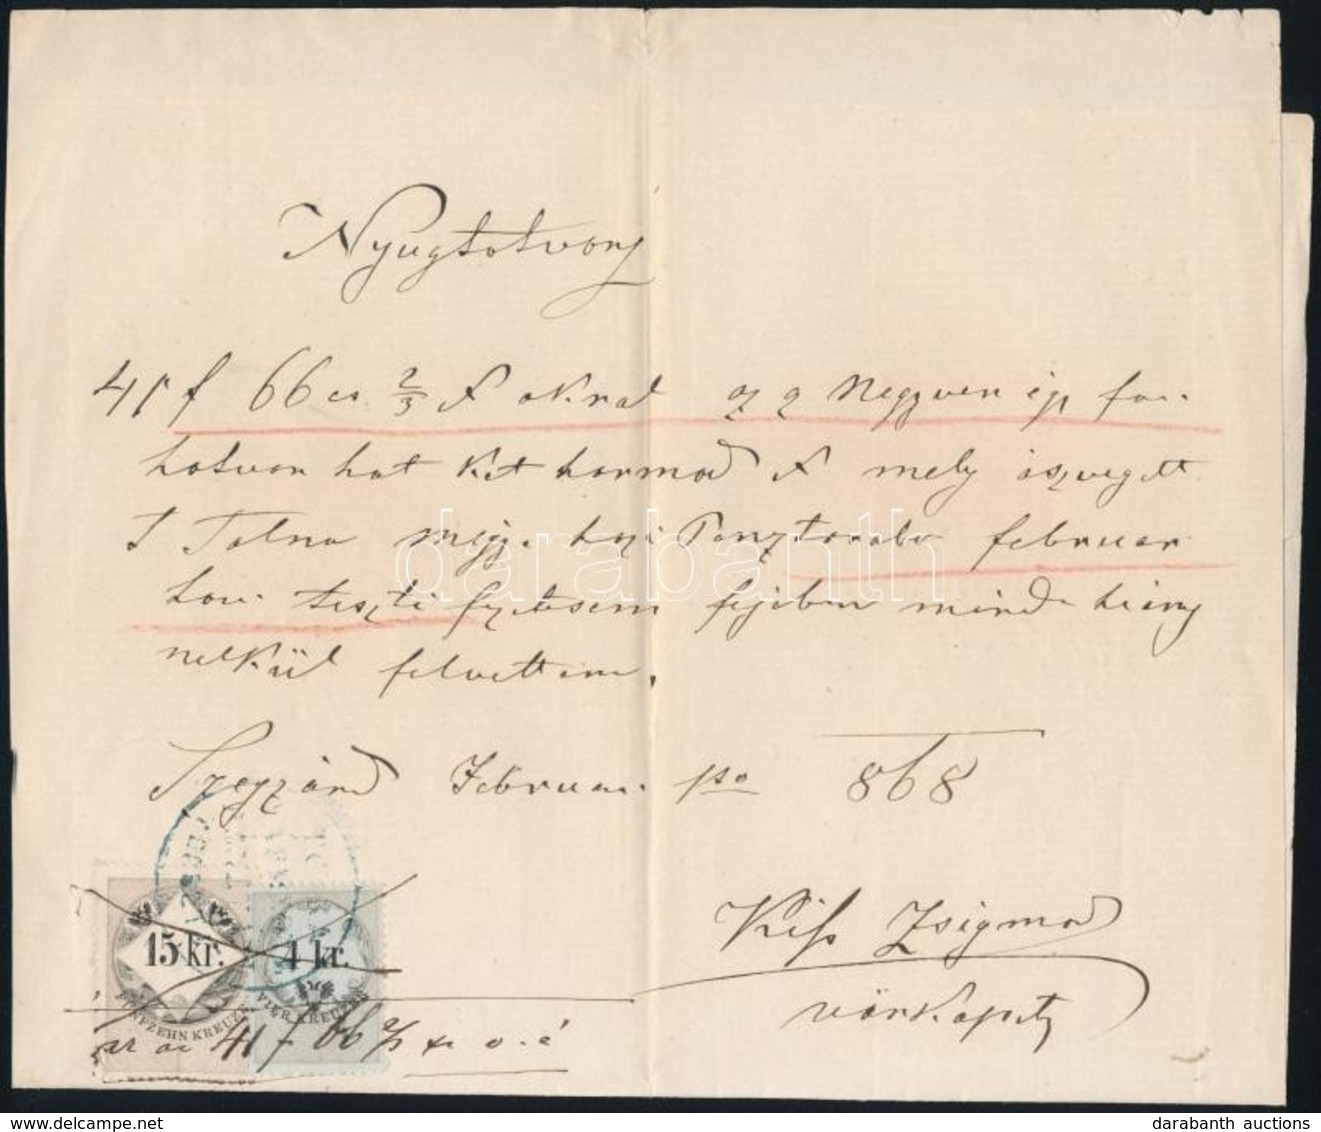 1868  Nyugtatvány Szekszárd. 1866 4 Kr (MBK 122A, Kékes)  (36 000) + 15kr (fehér Papírú) - Ohne Zuordnung